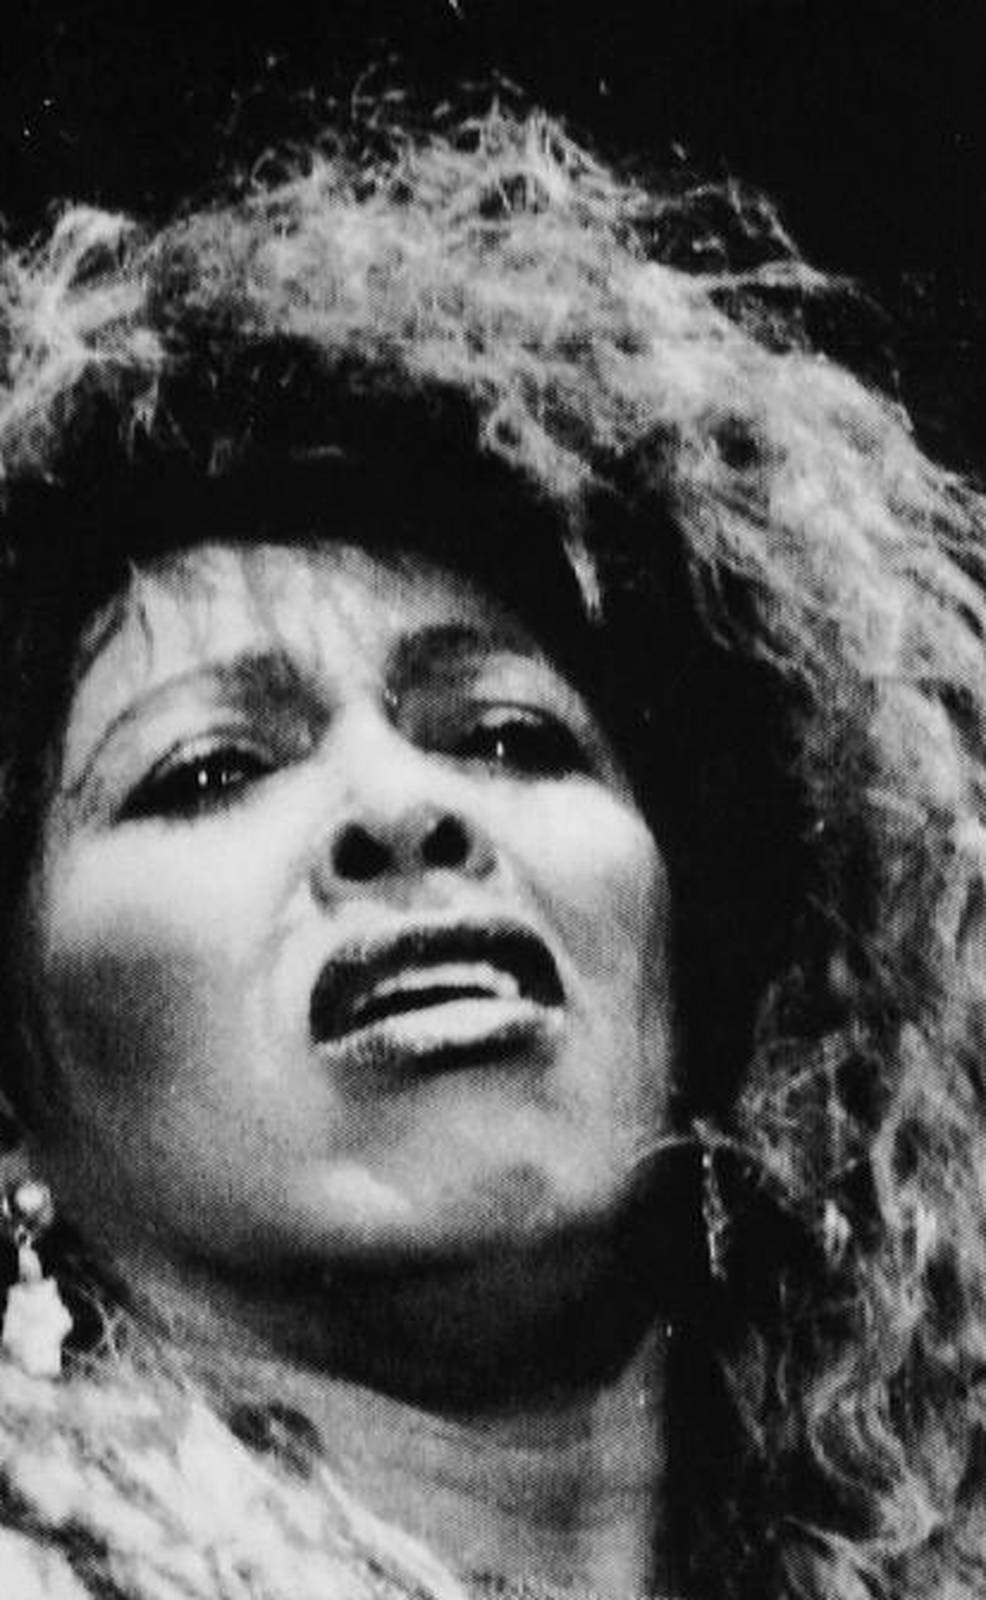 Tina Turner sings at Woburn Abbey